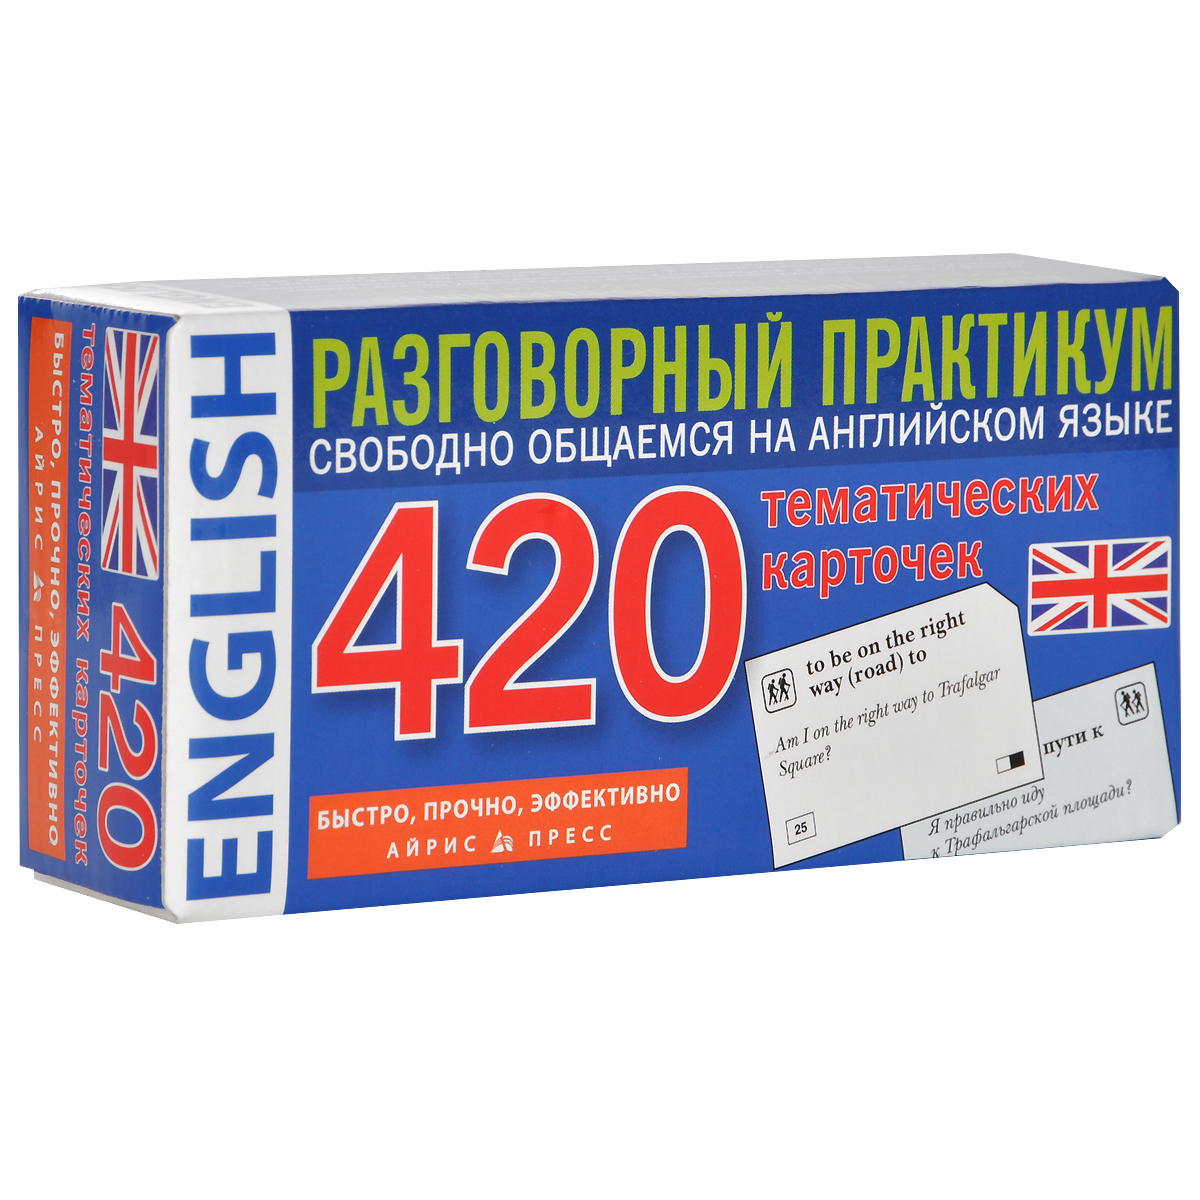 Zakazat.ru Английский язык. Разговорный практикум (набор из 420 карточек)